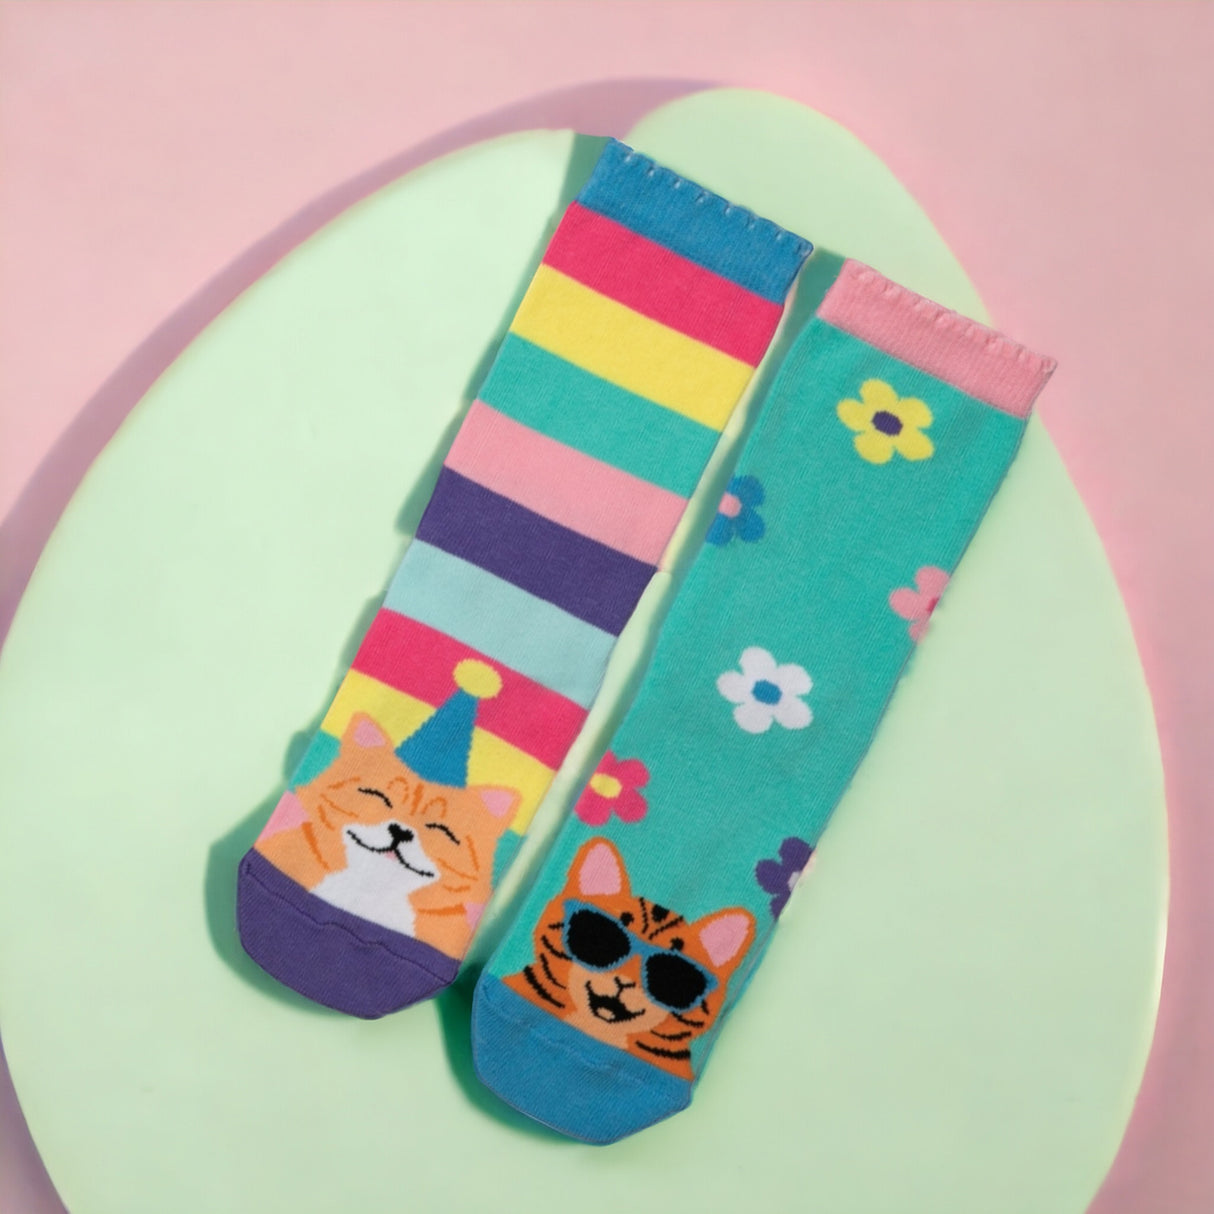 Kitten Heels Oddsocks Socken Geschenke für Frauen Katzen Strümpfe in 30-38 im 6er-Set